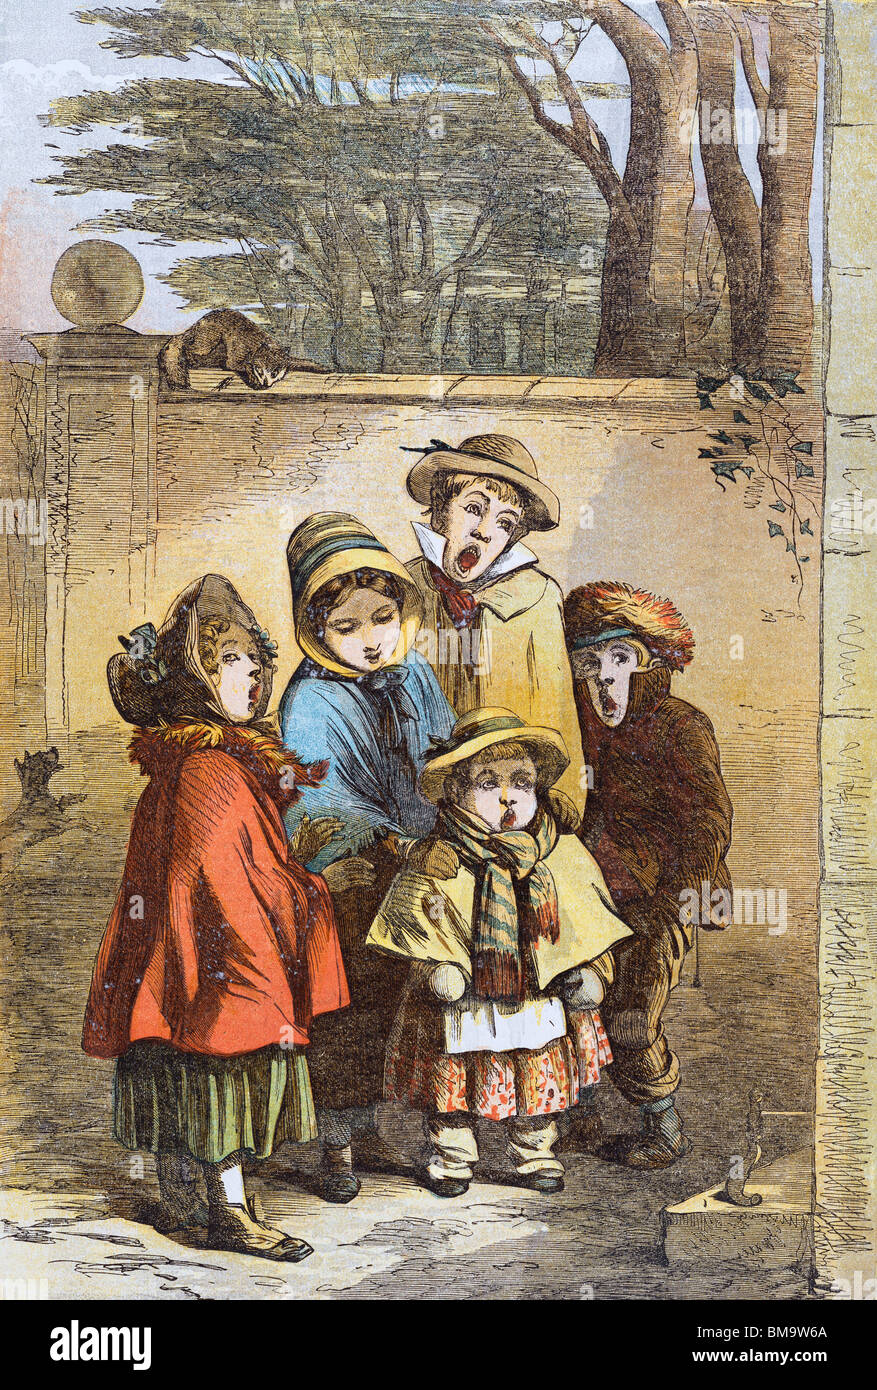 Un Cuento de Navidad, desde el Illustrated London News, ilustrado por Phiz. Londres, Inglaterra, 1855 Foto de stock